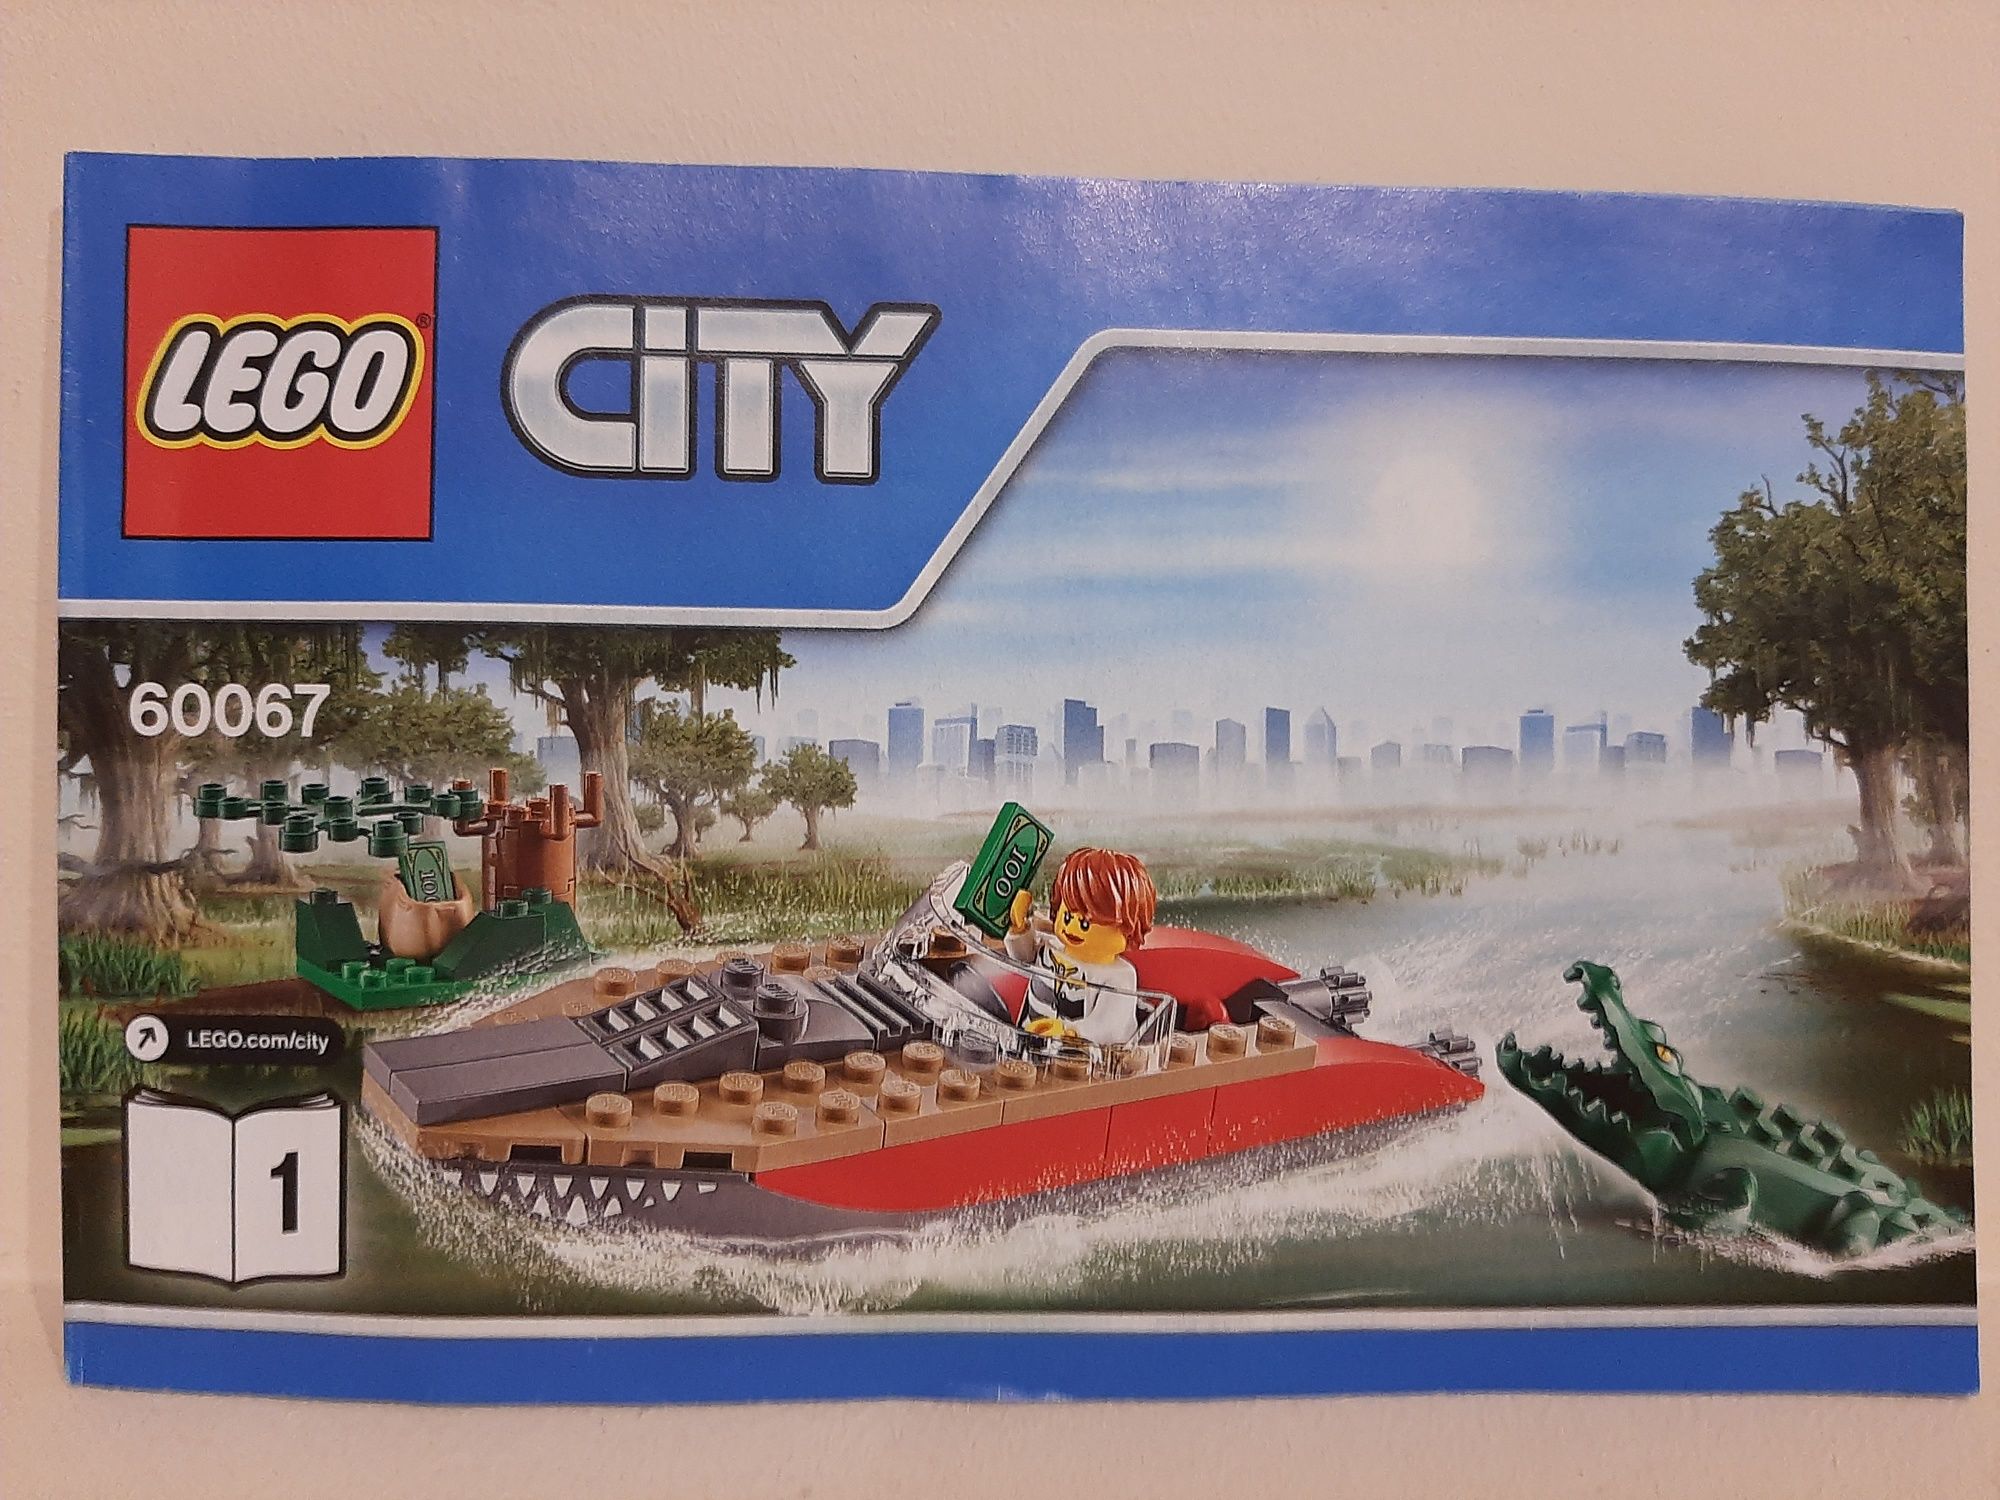 Lego City 60067 - Łódź, krokodyl i wyspa + instrukcja